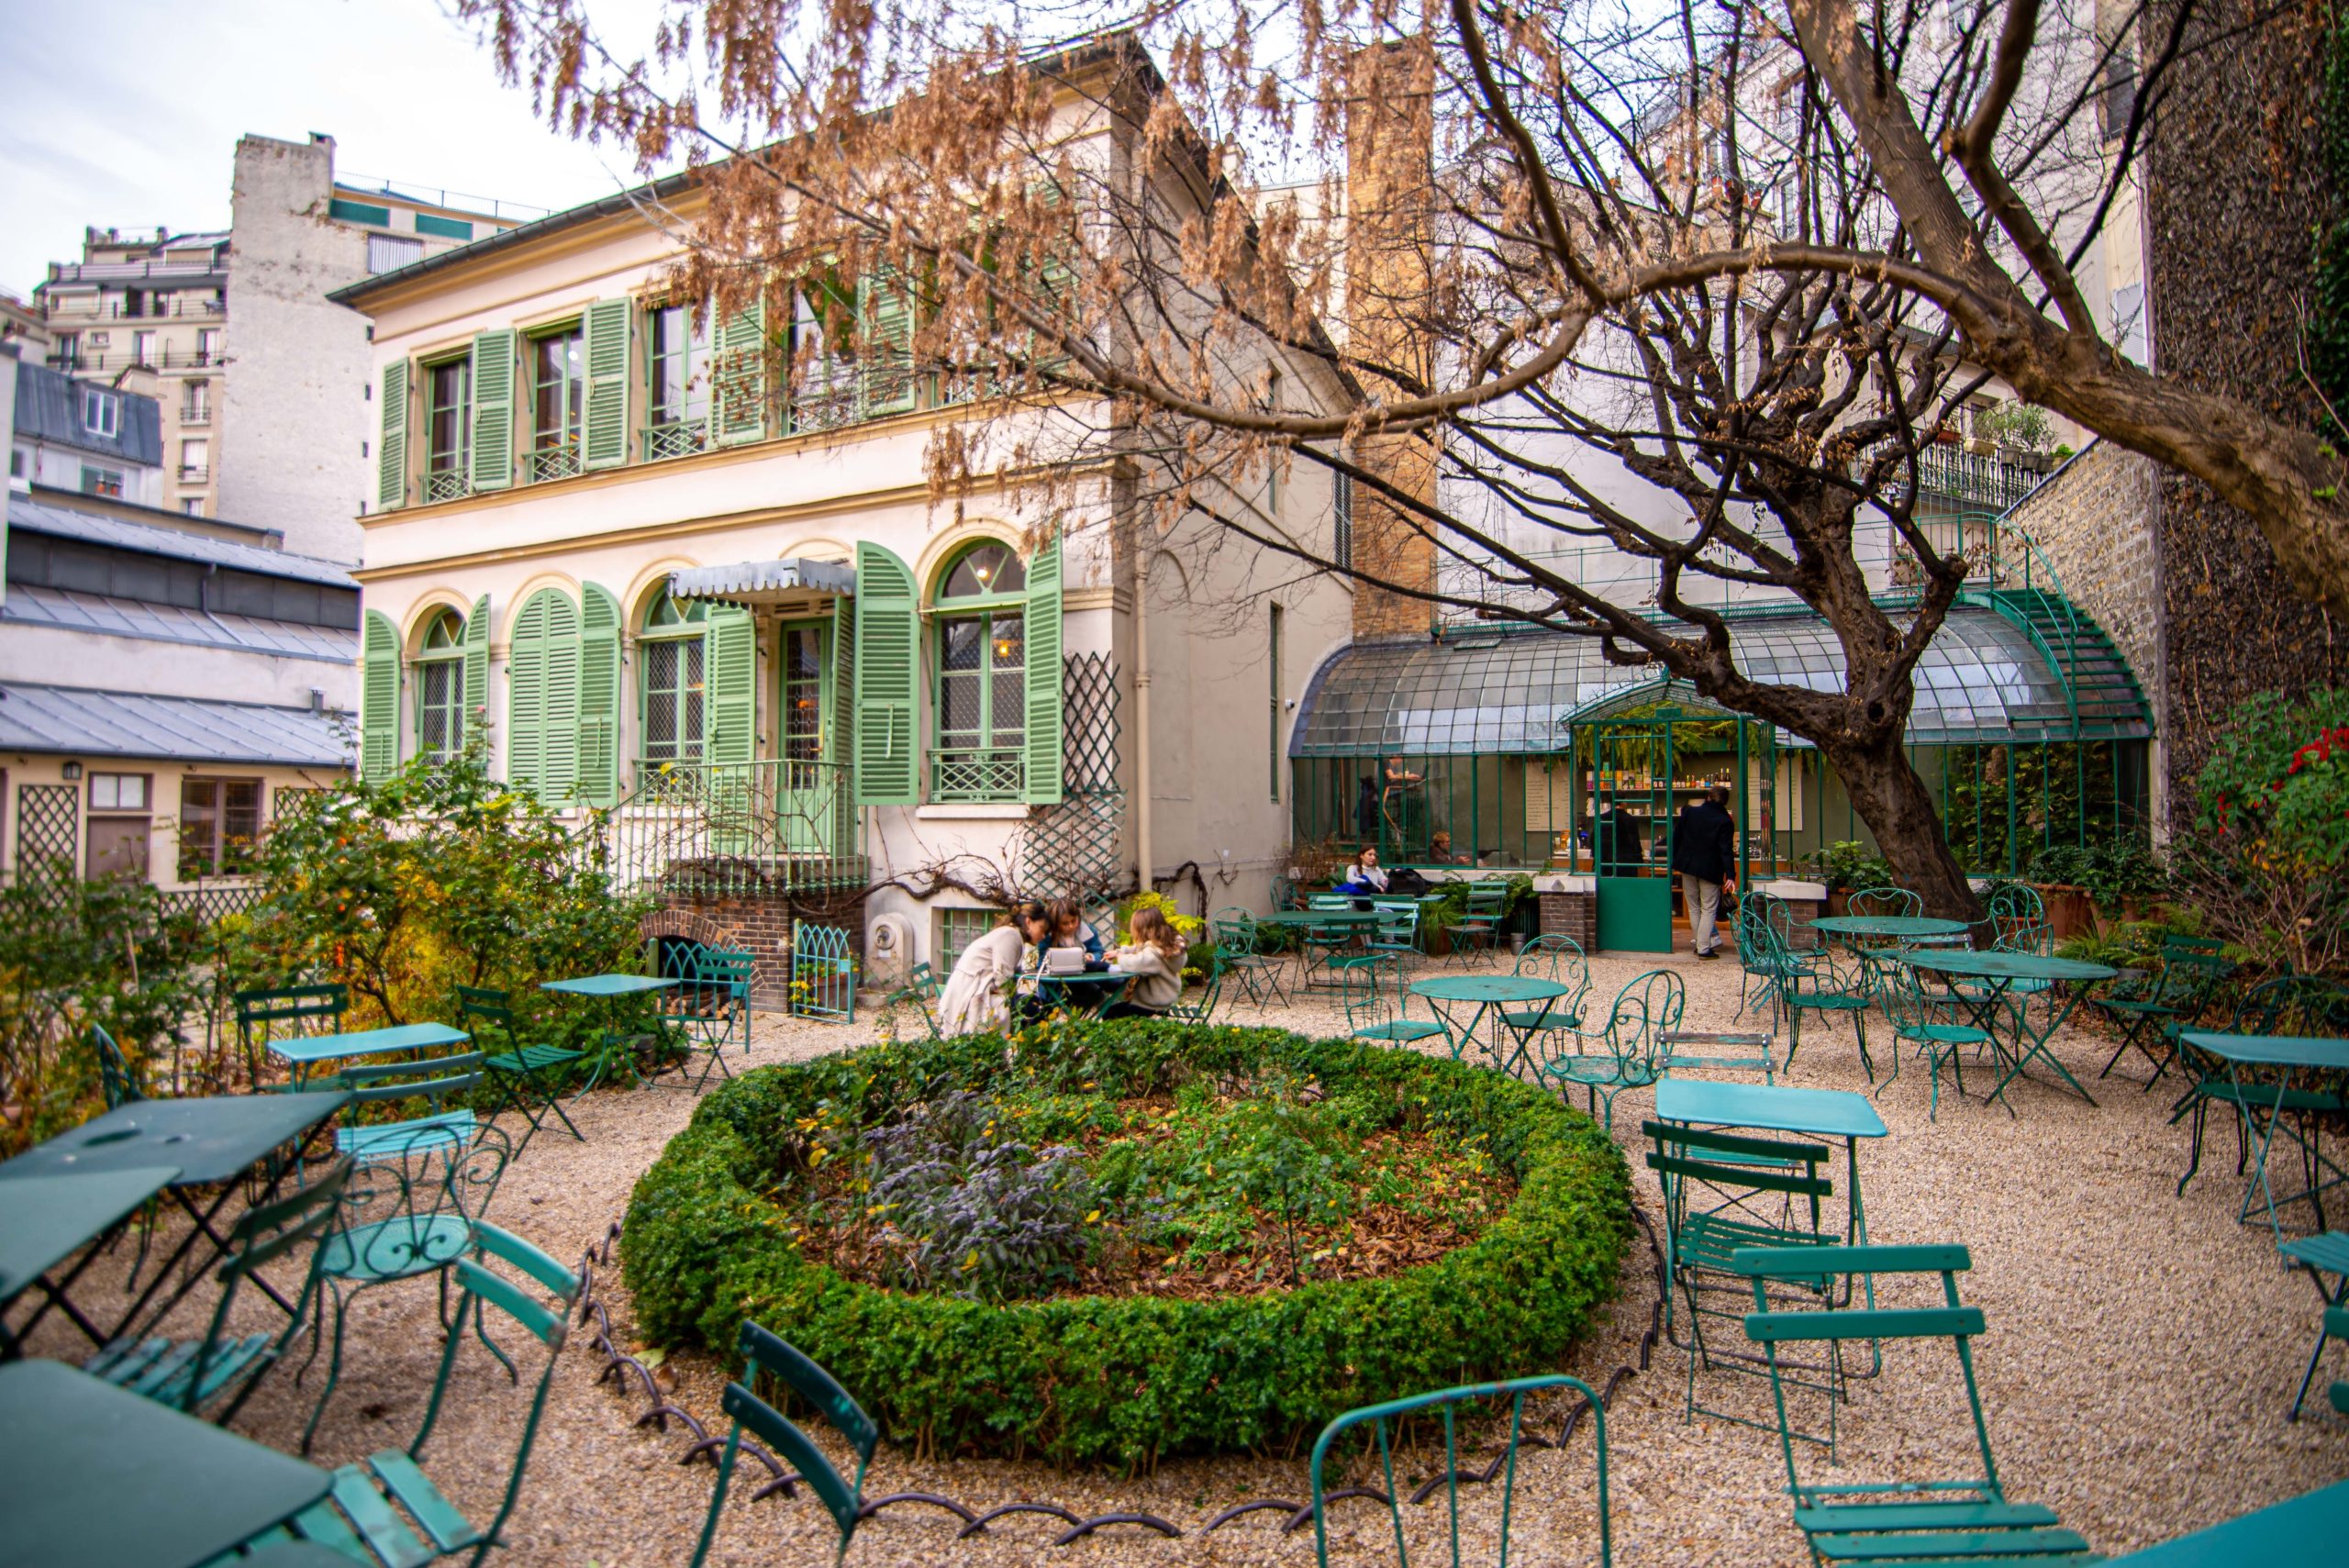 Musée de la vie romantique proche de Pigales à paris blog voyage